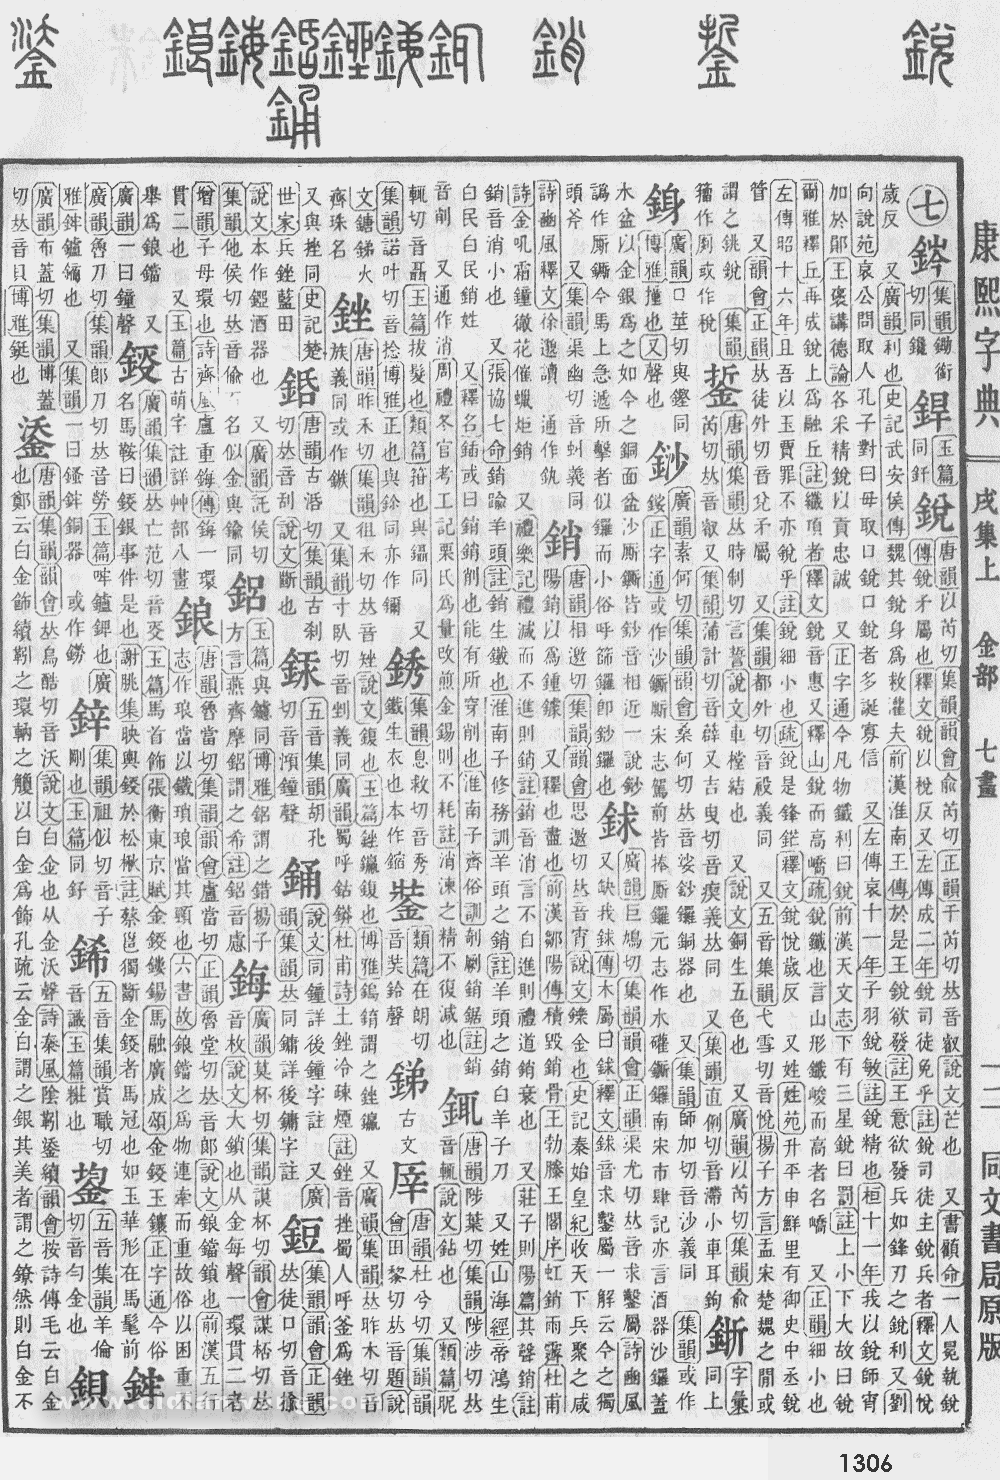 康熙字典掃描版第1306頁